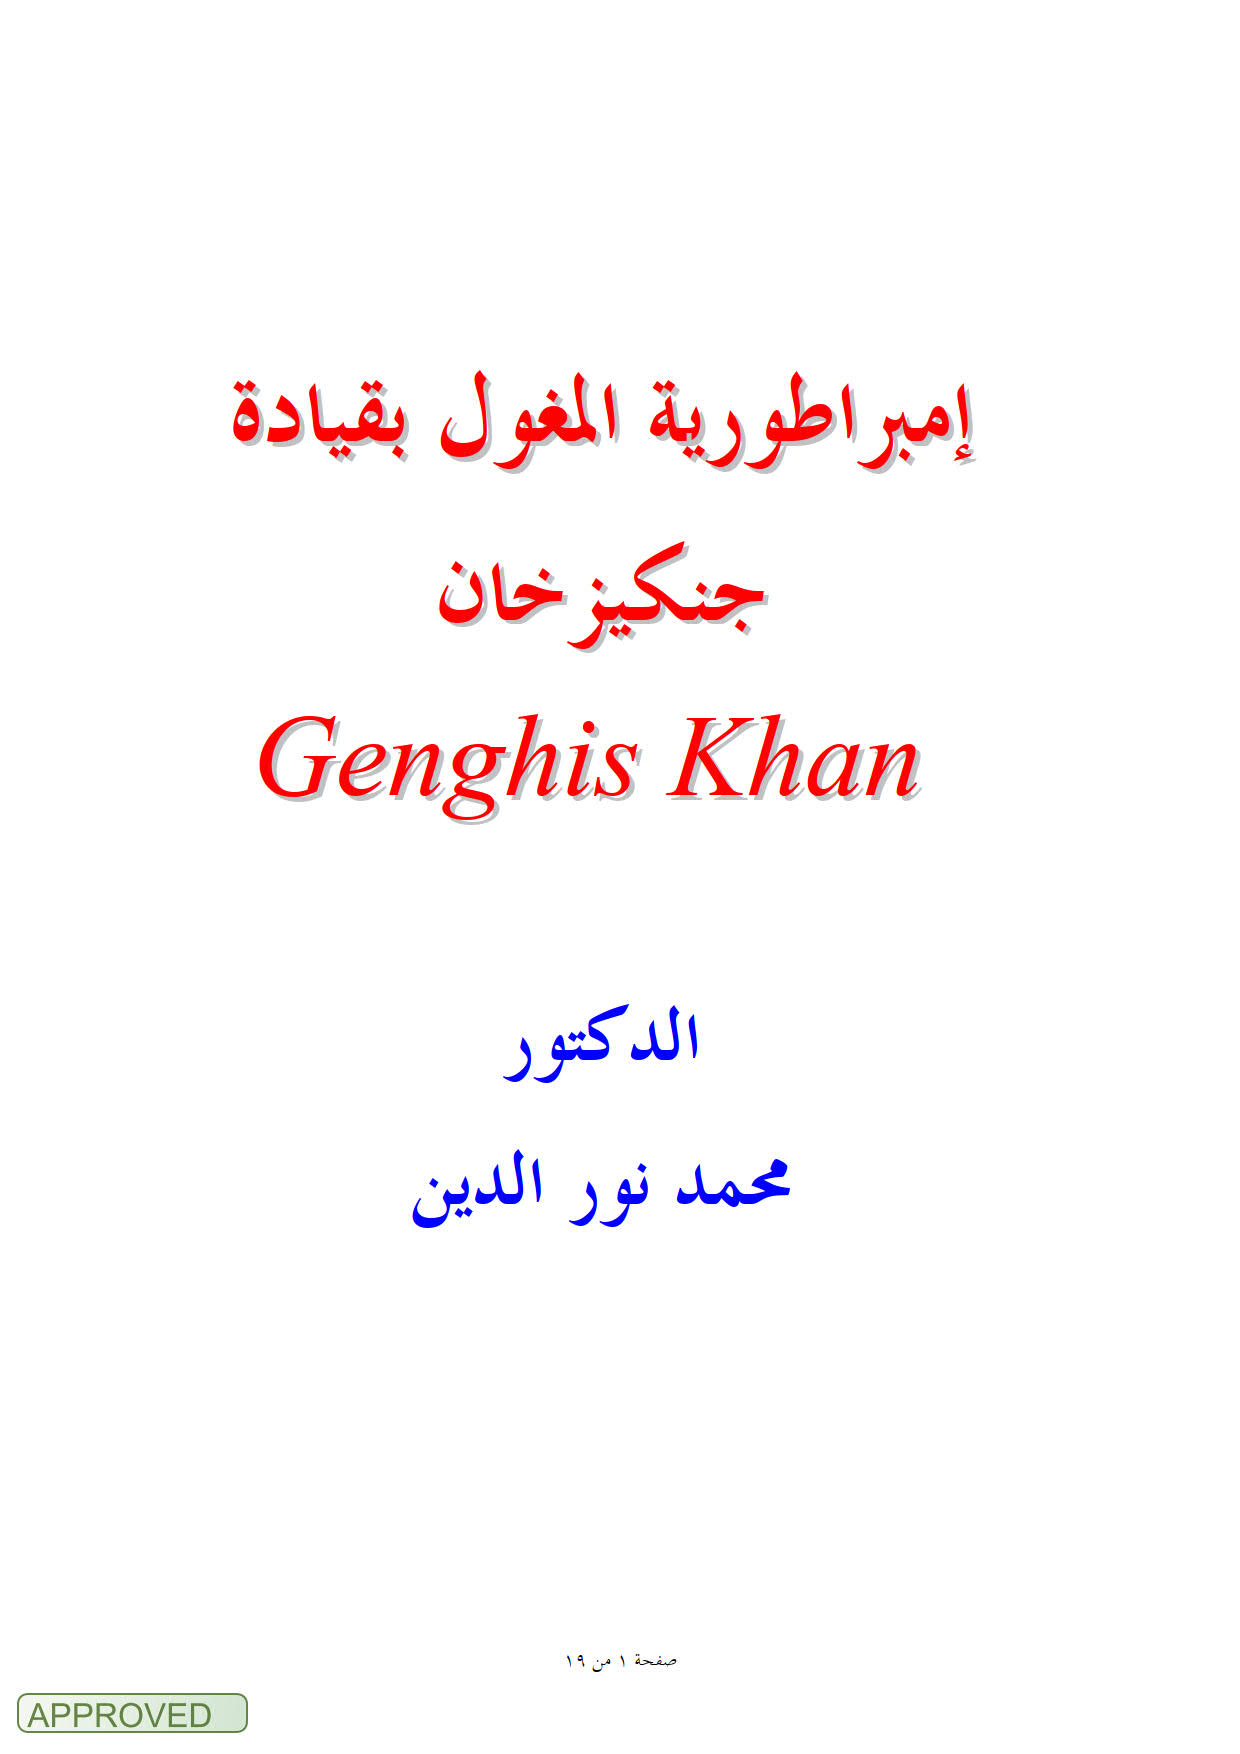 إمبراطورية المغول بقيادة جنكيز خان